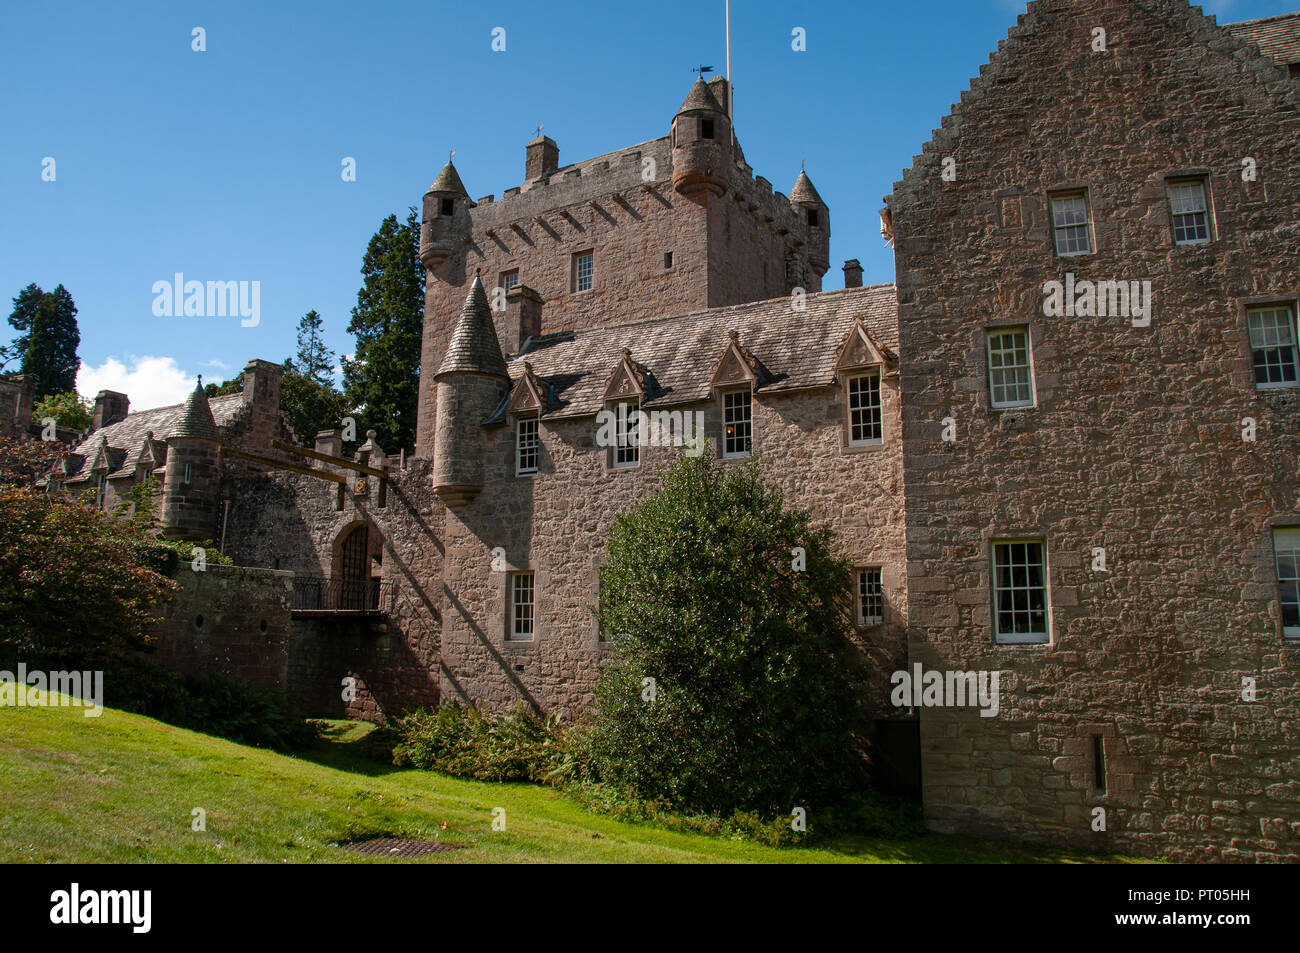 Le Château de Cawdor près d'Inverness, en Écosse, qui abrite le thane de Cawdor rendu célèbre dans la pièce de Shakespeare Macbeth Banque D'Images